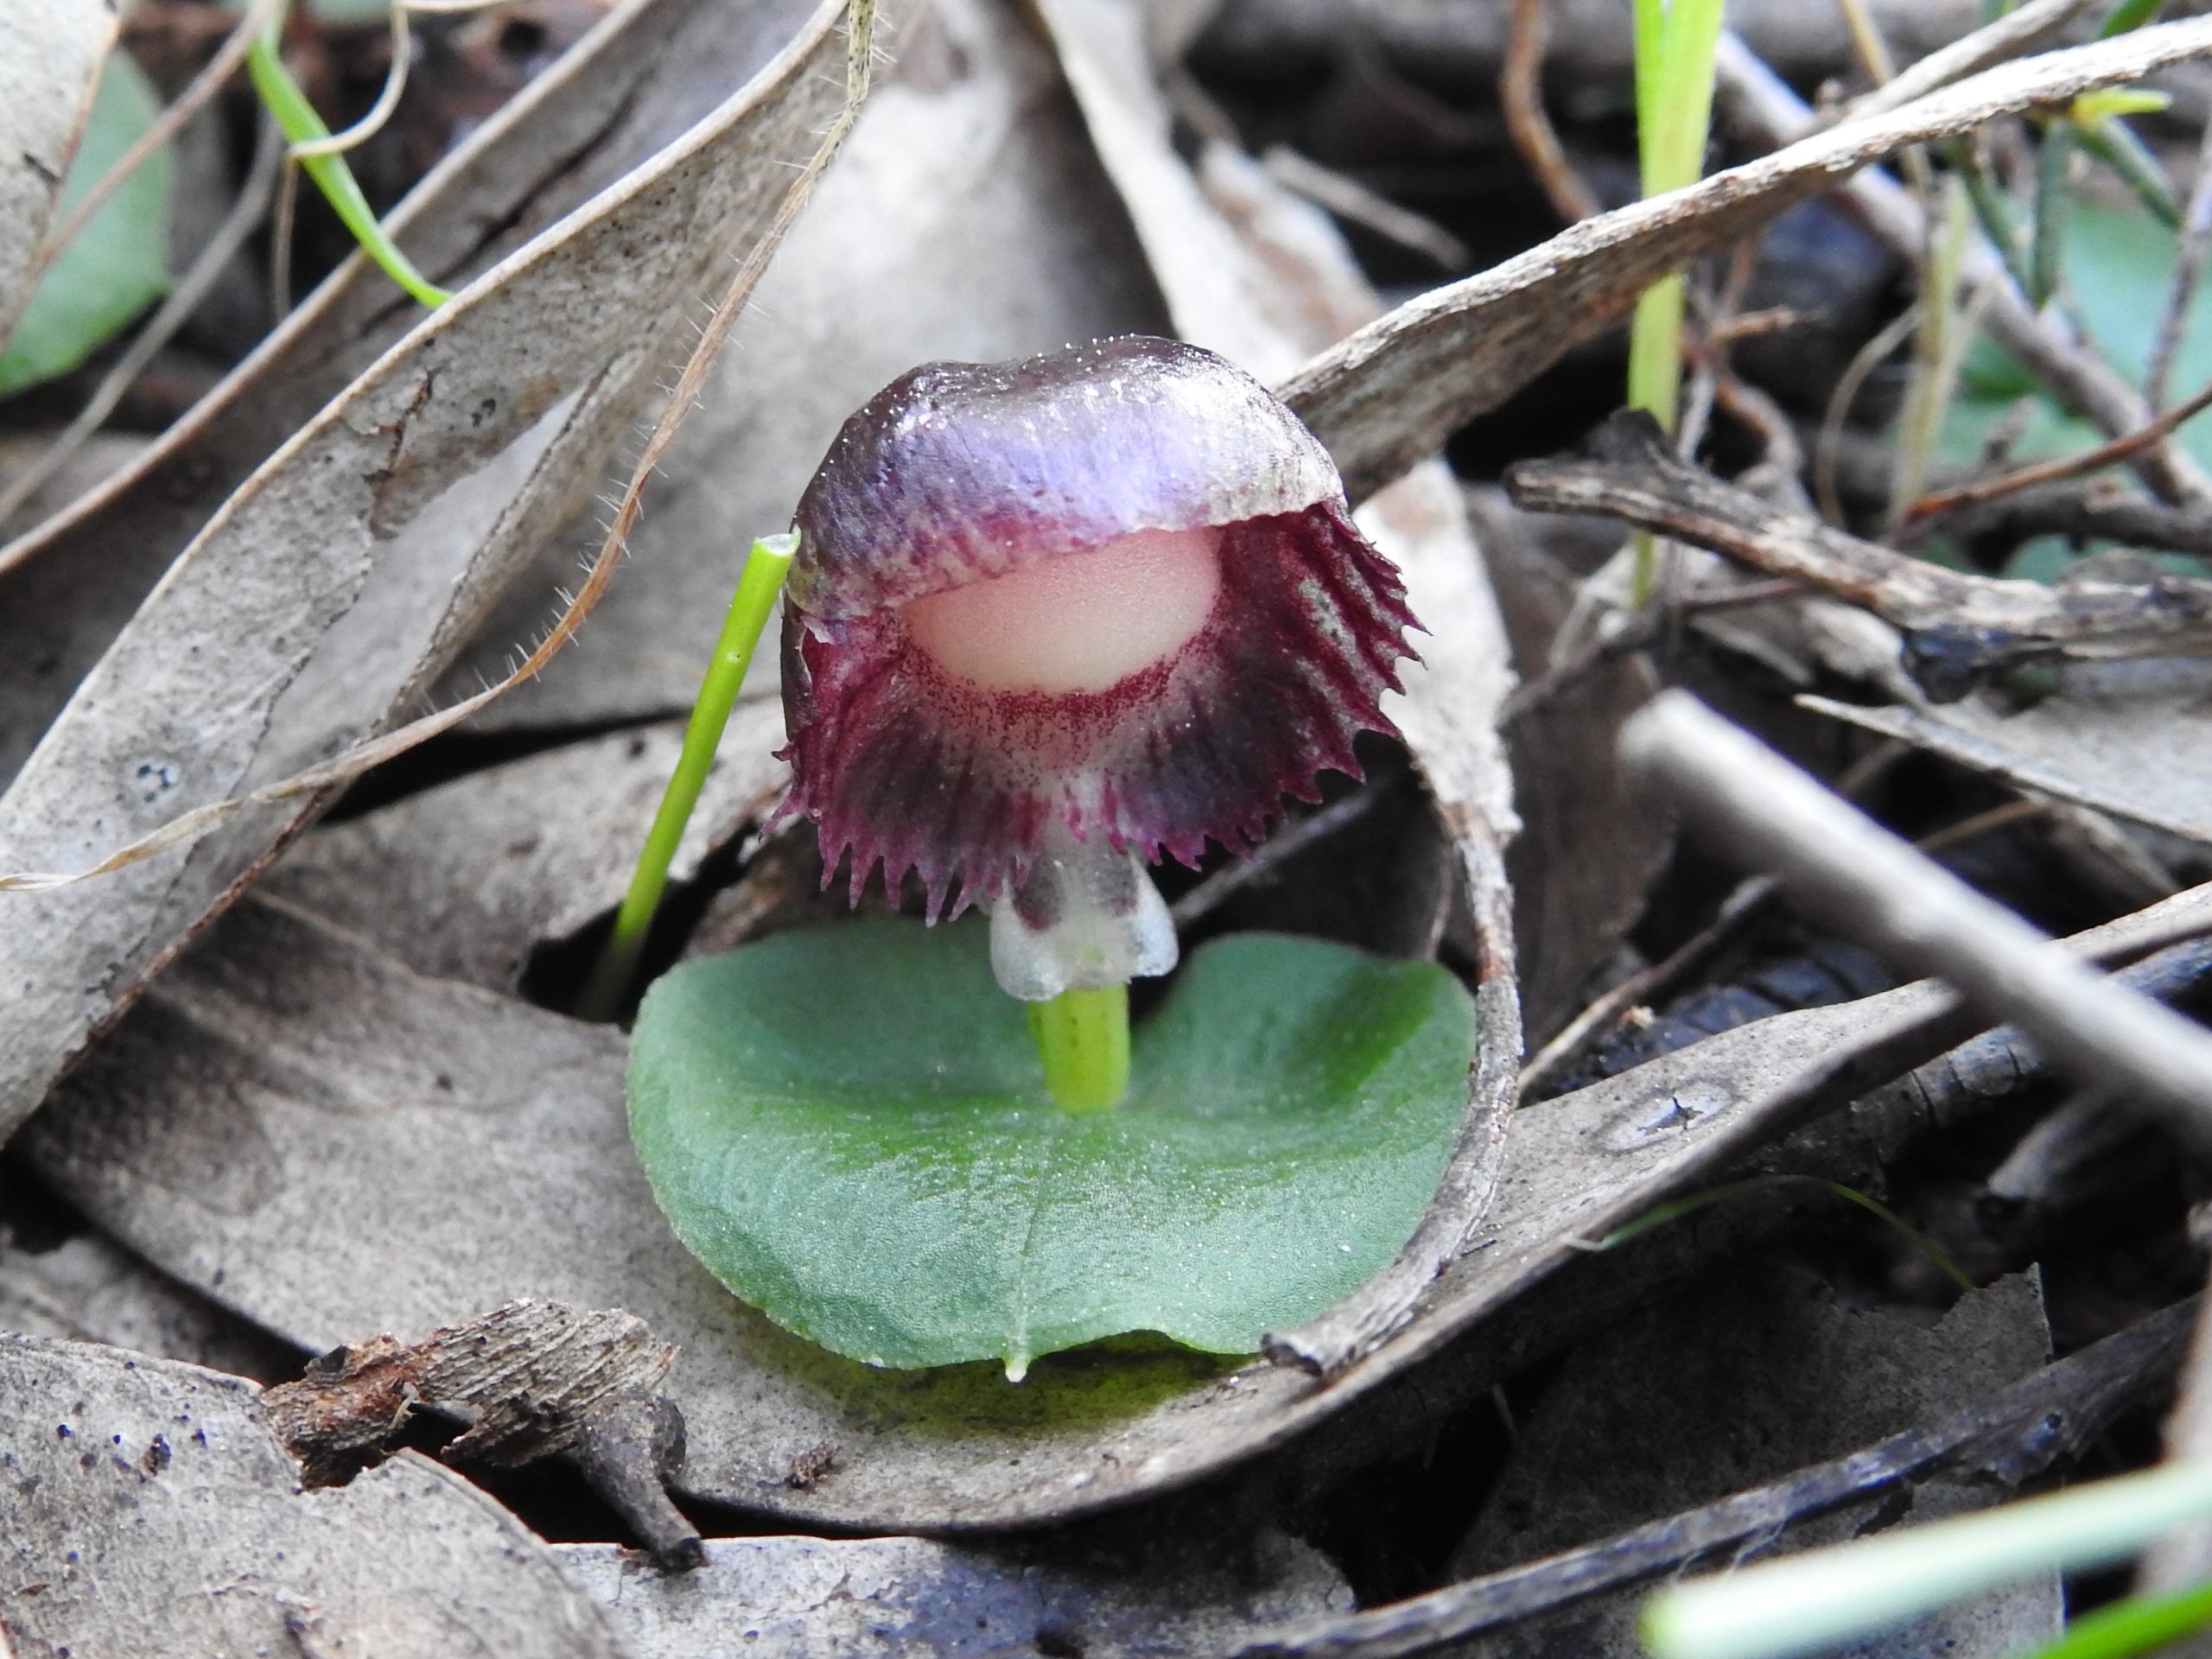 Veined Helmut Orchid, Corybas diemenicus,  Orchidaceae, NOSSA, https://nossa.org.au/